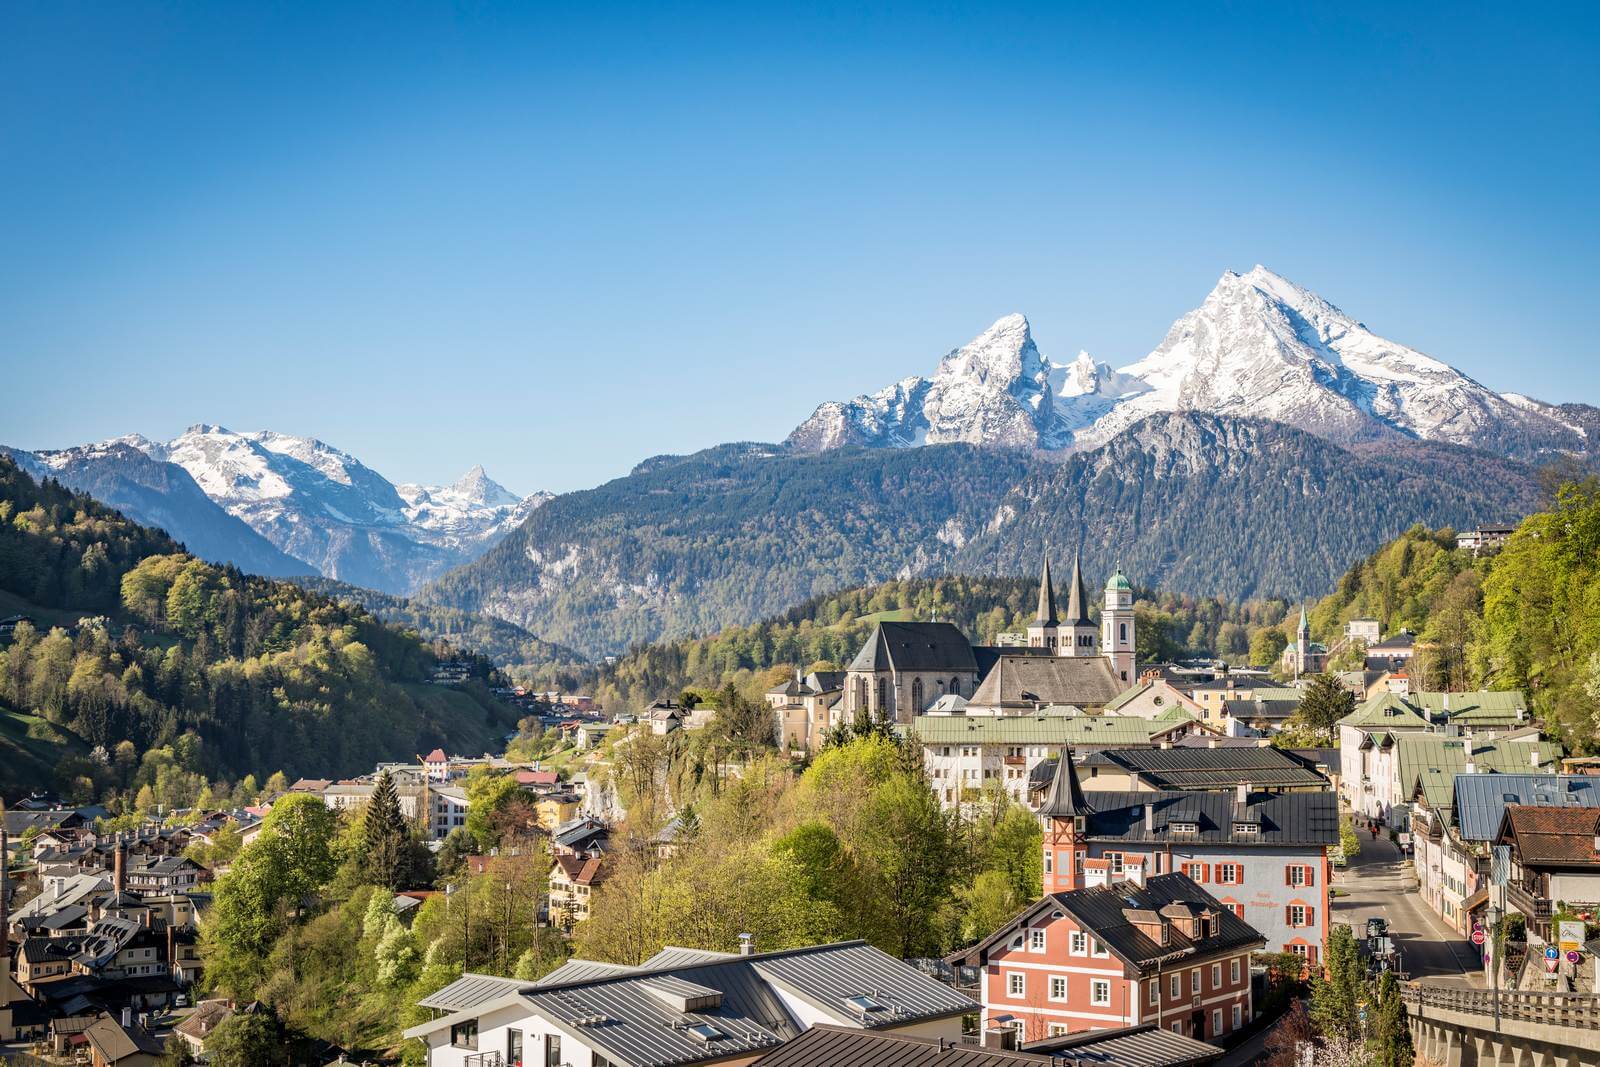 Foto Berchtesgaden unter dem Watzmann-Massiv  Berchtesgadener Land Tourismus - Lupe Reisen